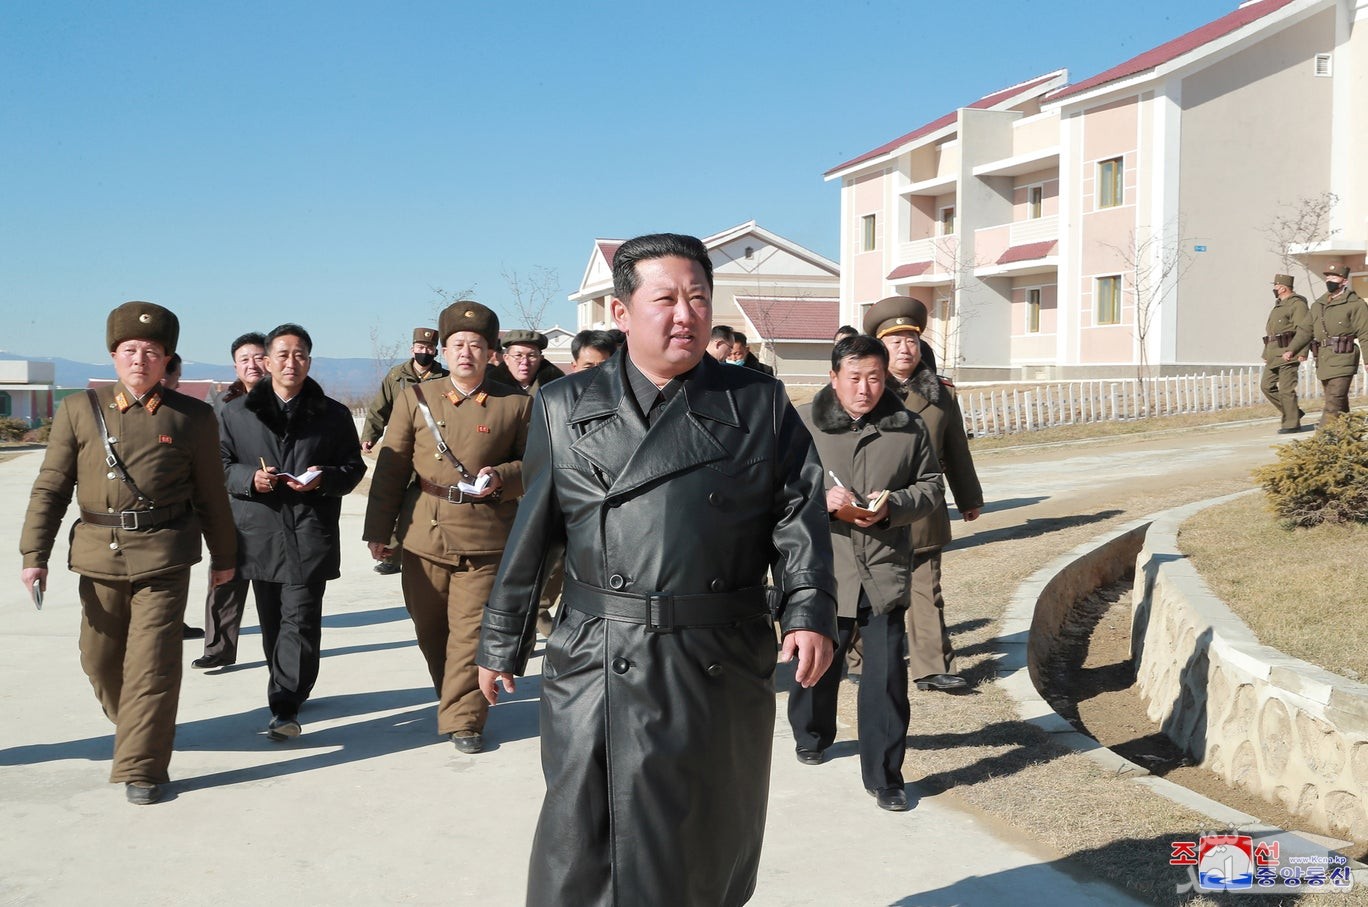 بازدید رهبر کره شمالی از شهر "سامجیون"/ خبرگزاری رسمی کره شمالی